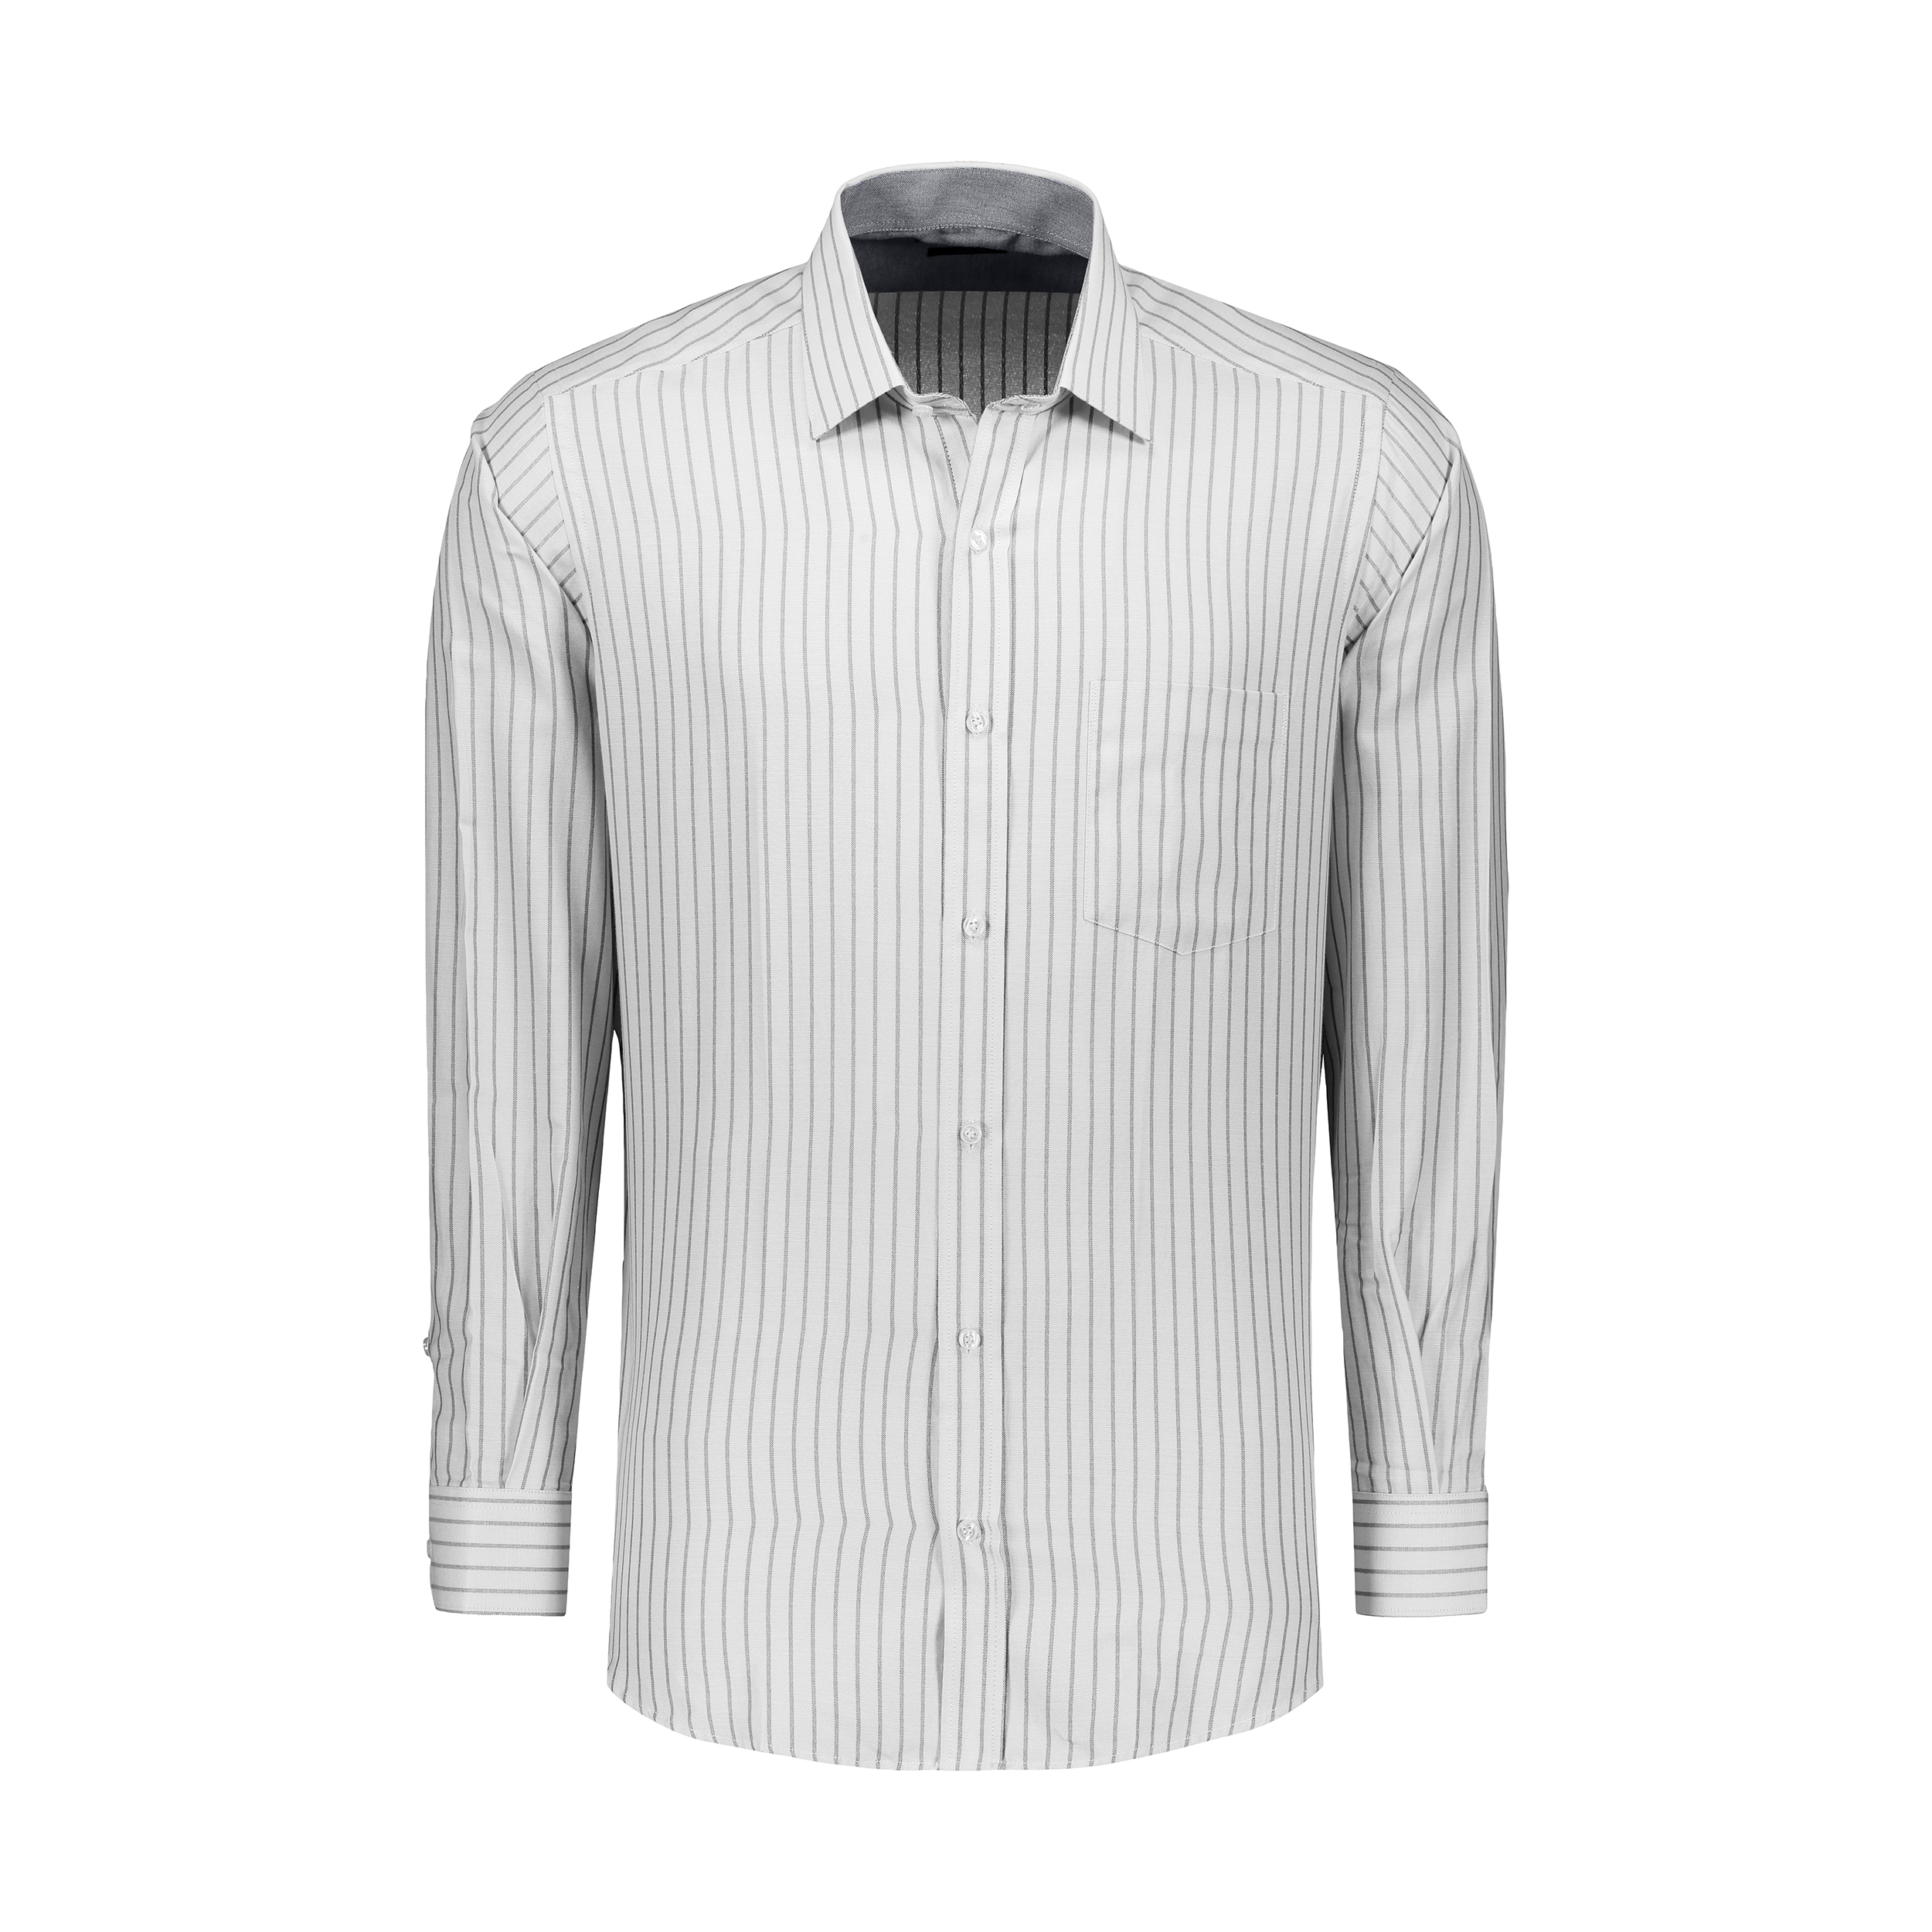 پیراهن آستین بلند مردانه ایکات مدل ST1152000 رنگ سفید